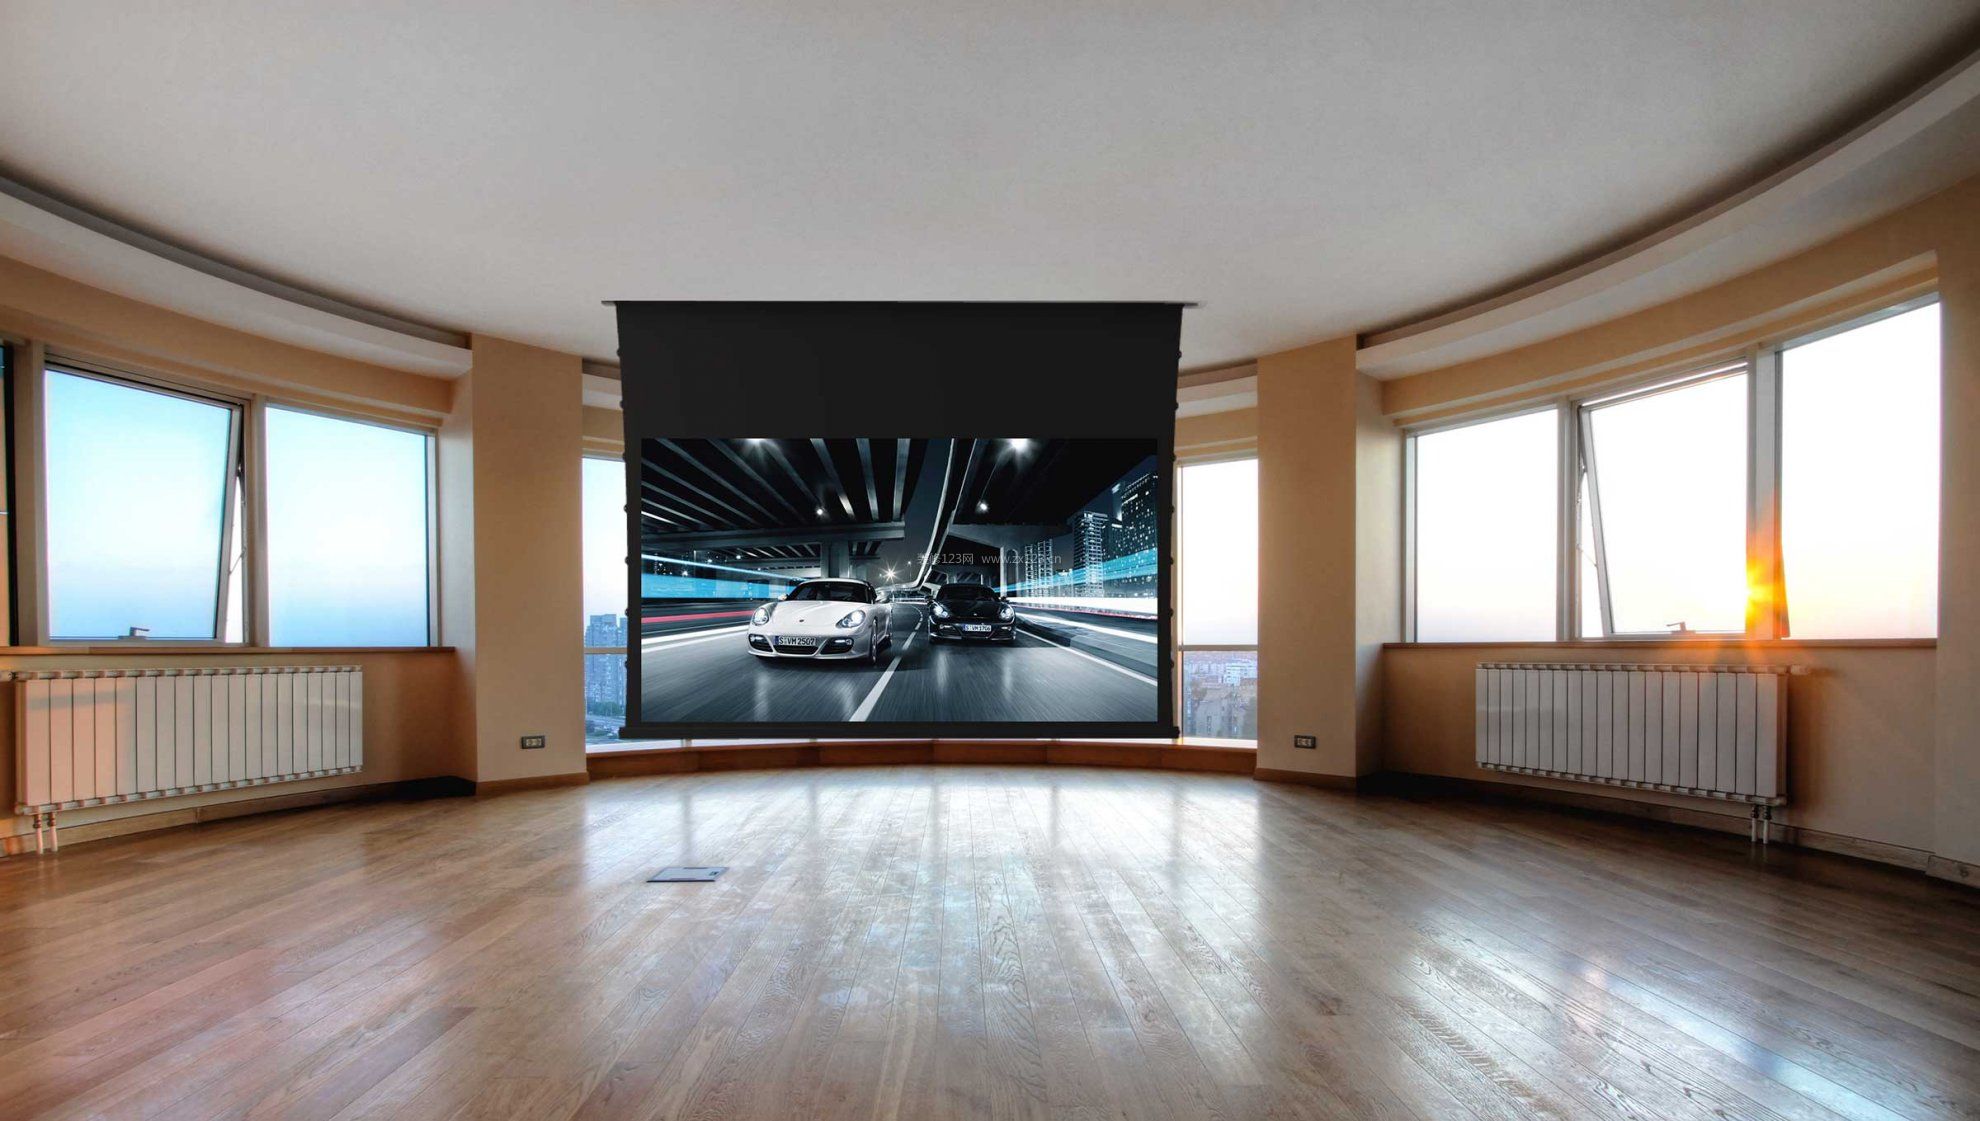 家庭影院室内3d影视墙效果图大全